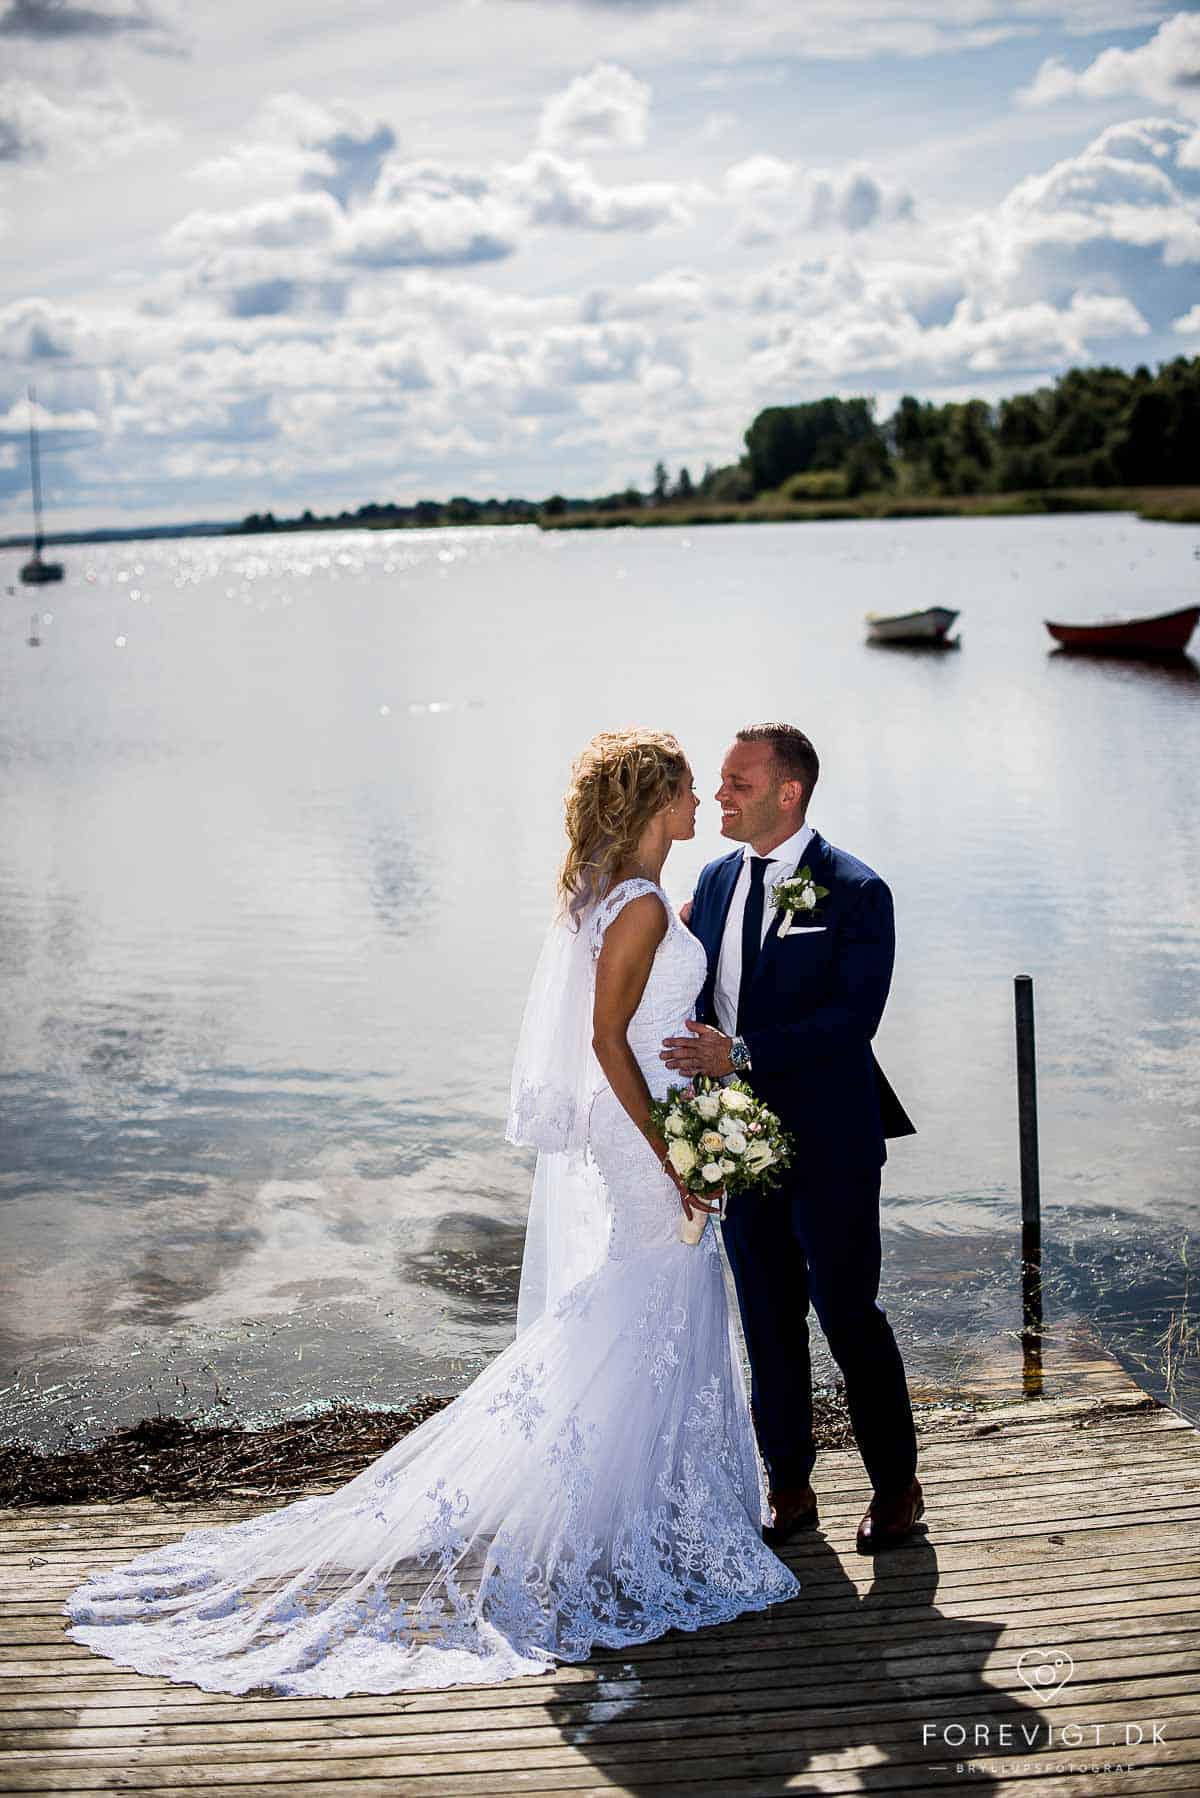 Professionel fotograf Roskilde, med fokus på bryllups, portræt